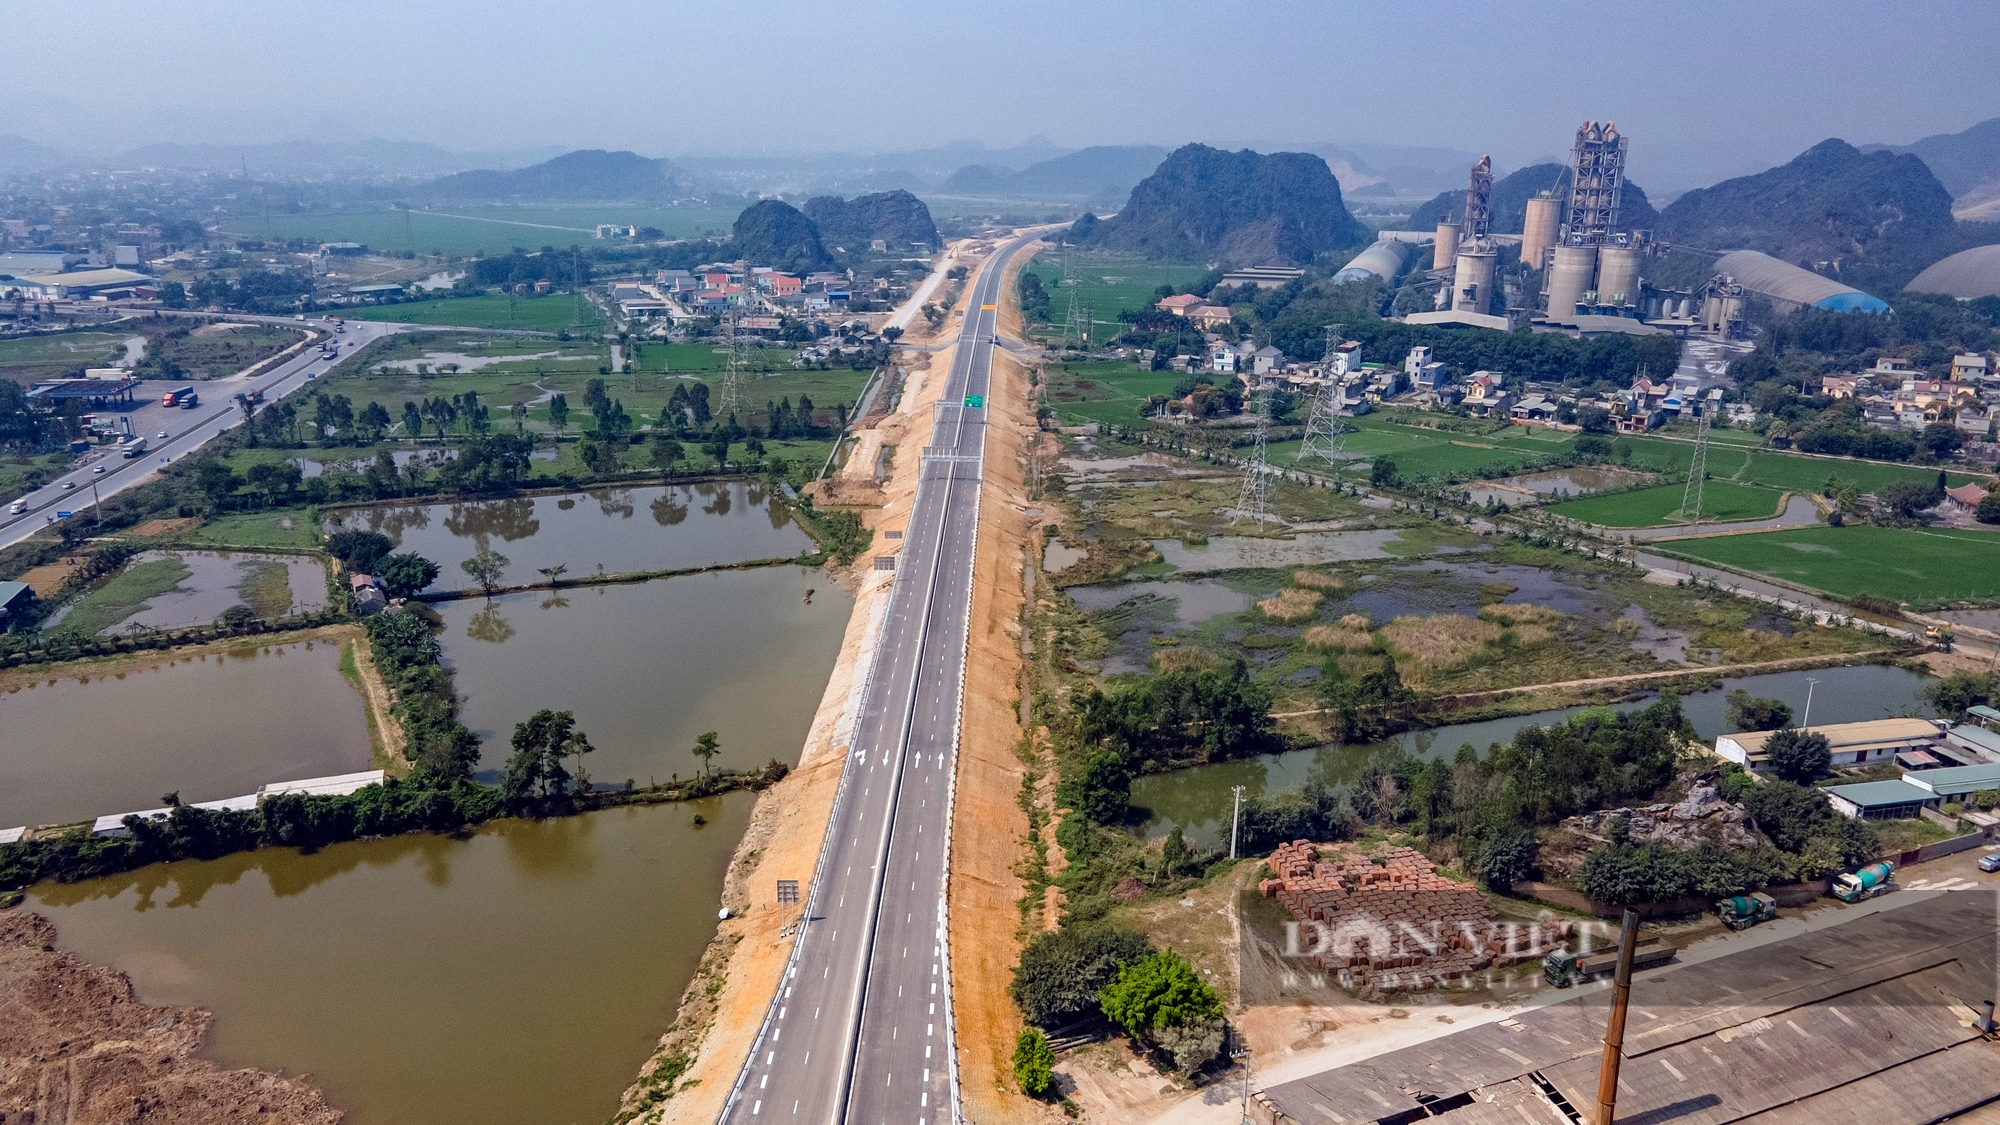 Phong cảnh hữu tình trên những cao tốc nối các tỉnh phía Bắc với Hà Nội - Ảnh 9.